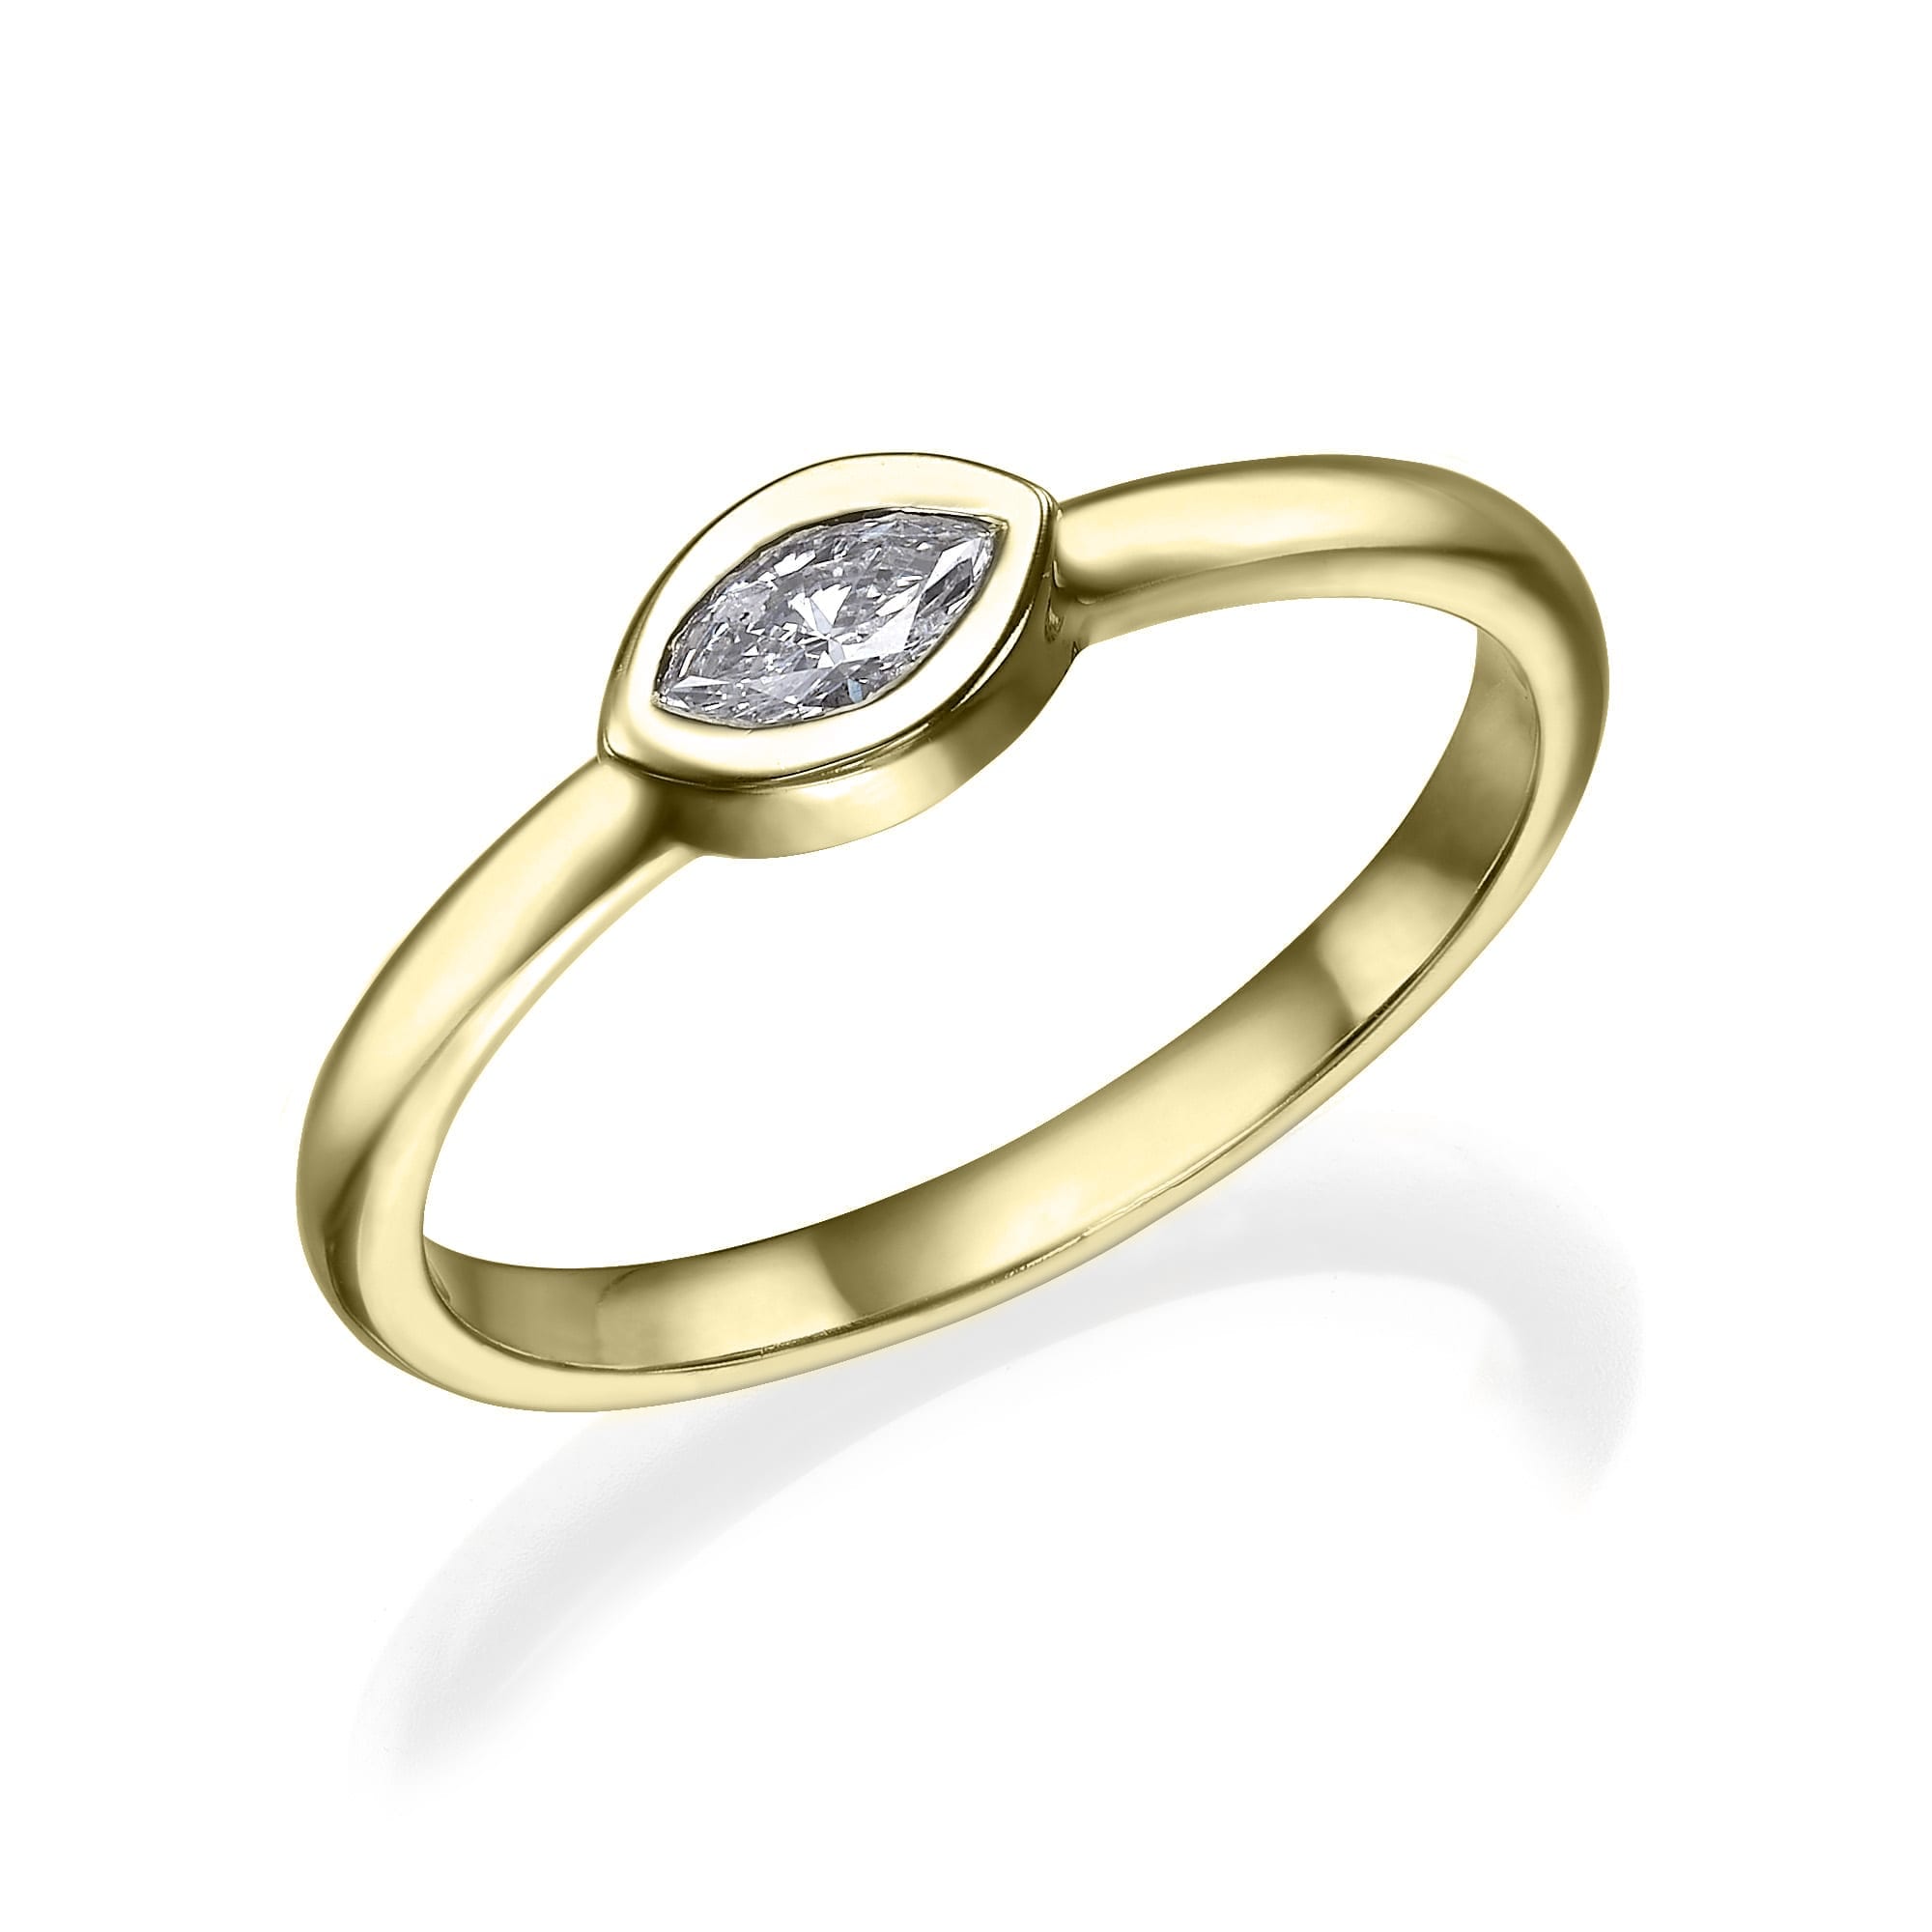 דגם טבעת יהלום אלגנטי Sam R552 הכולל יהלום בחיתוך מרקיז משובץ בעיצוב אלגנטי ומודרני.